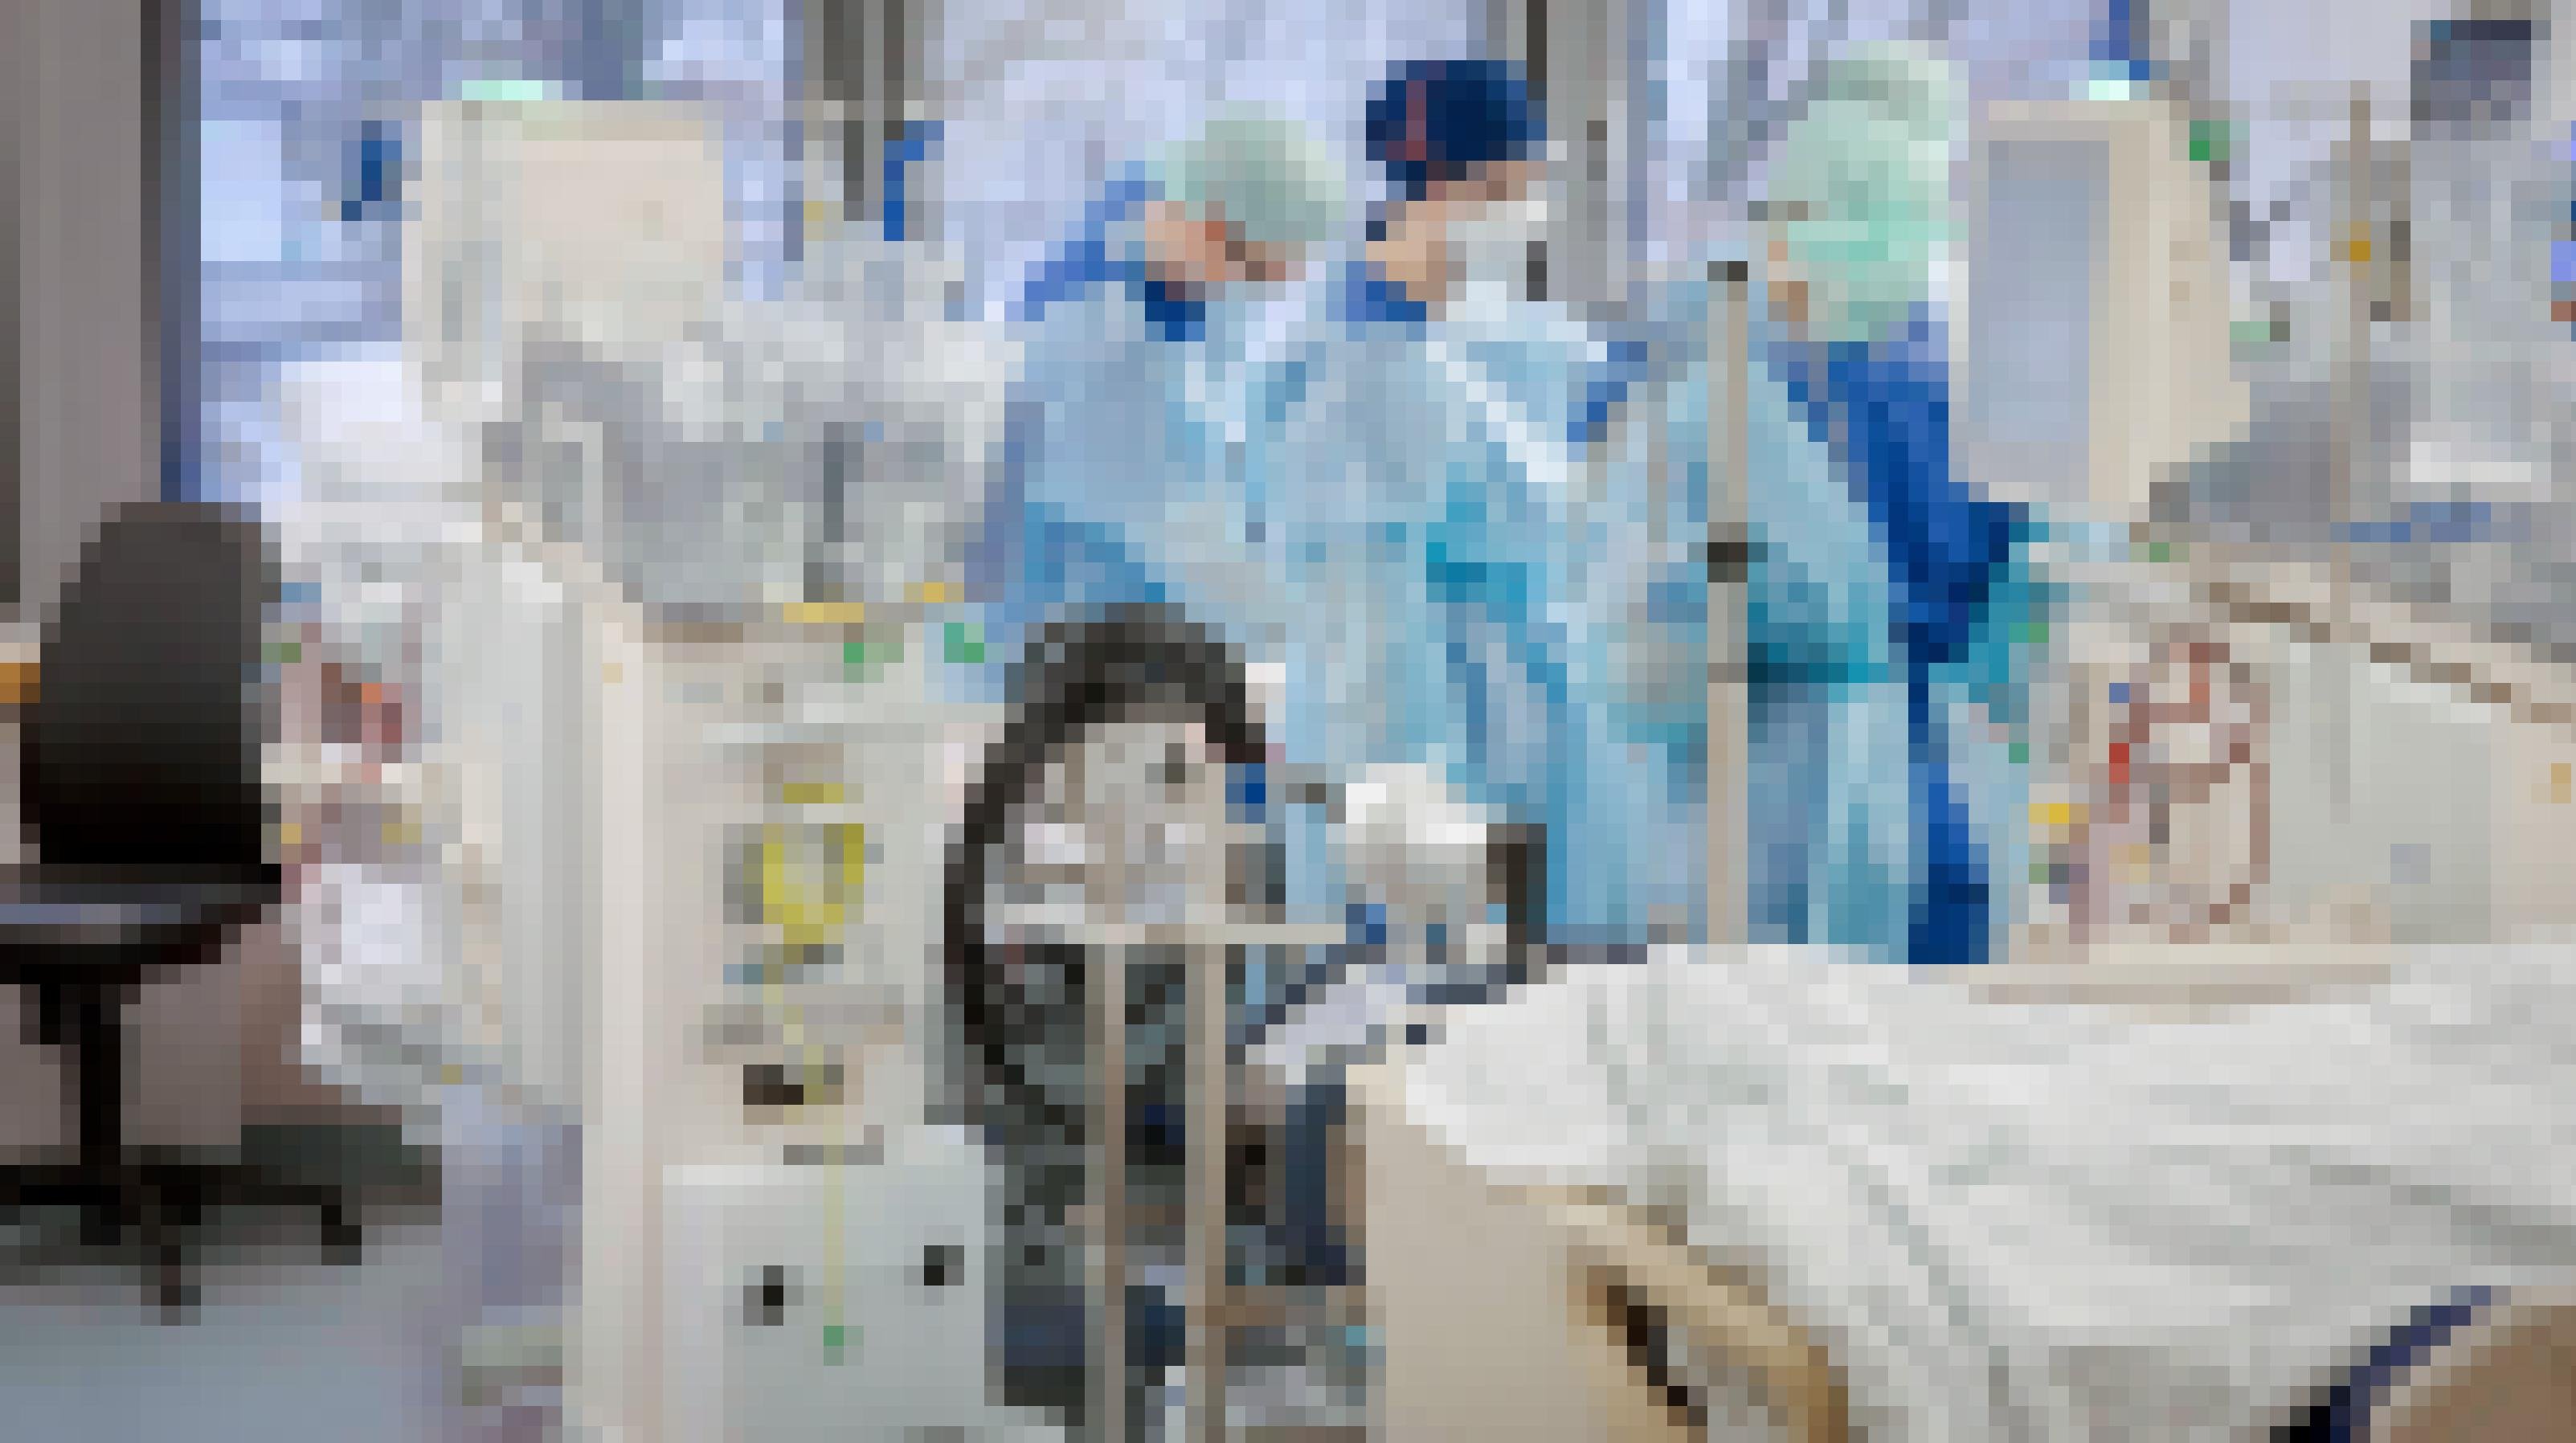 Intensivmedizinerïnnen bei der Arbeit – in Schutzkleidung in einem Krankenzimmer mit vielen medizinischen Geräten.